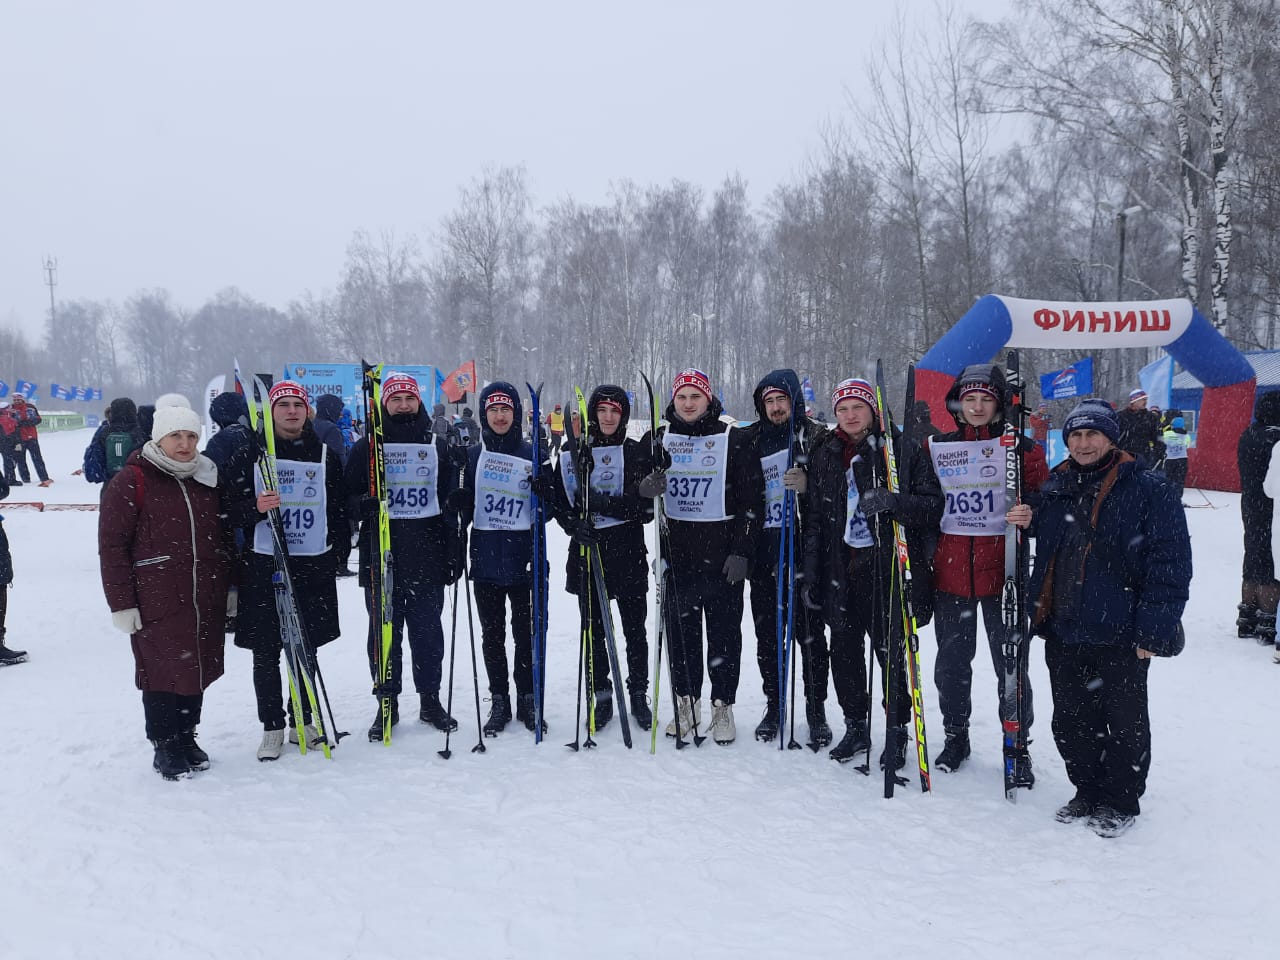 41 -я всероссийская массовая лыжная гонка "Лыжня России"